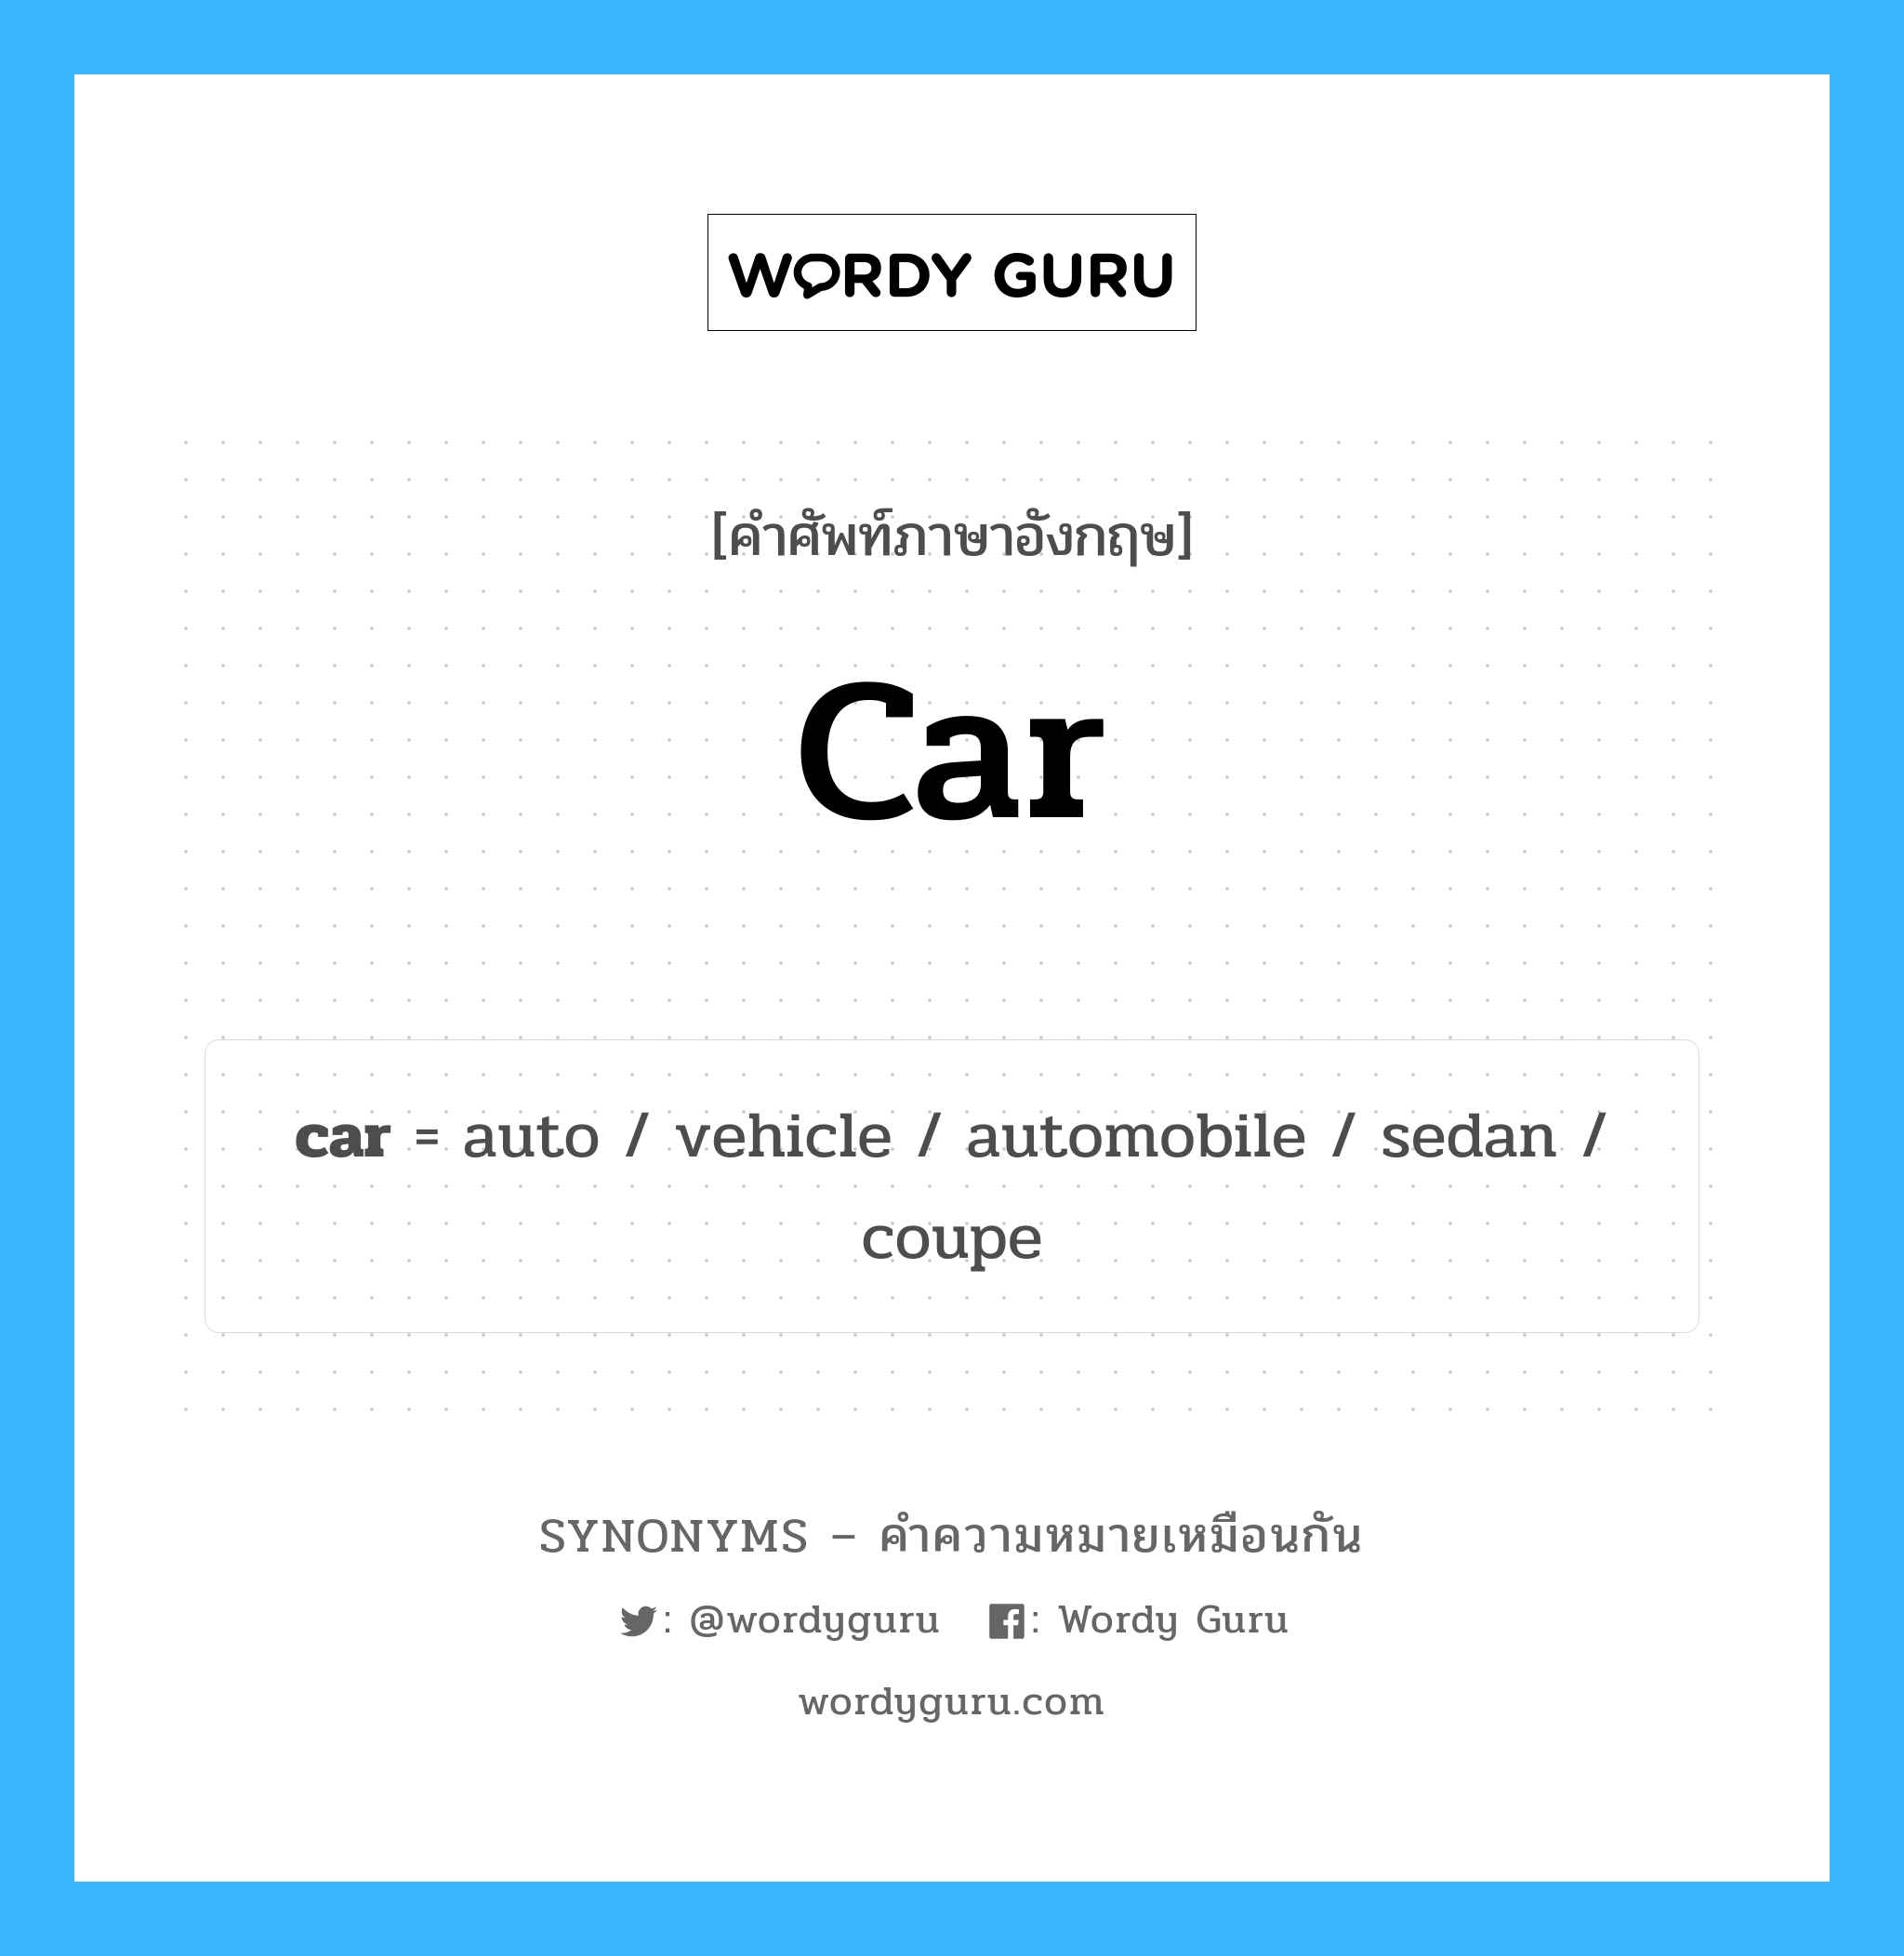 coupe เป็นหนึ่งใน car และมีคำอื่น ๆ อีกดังนี้, คำศัพท์ภาษาอังกฤษ coupe ความหมายคล้ายกันกับ car แปลว่า coupe หมวด car